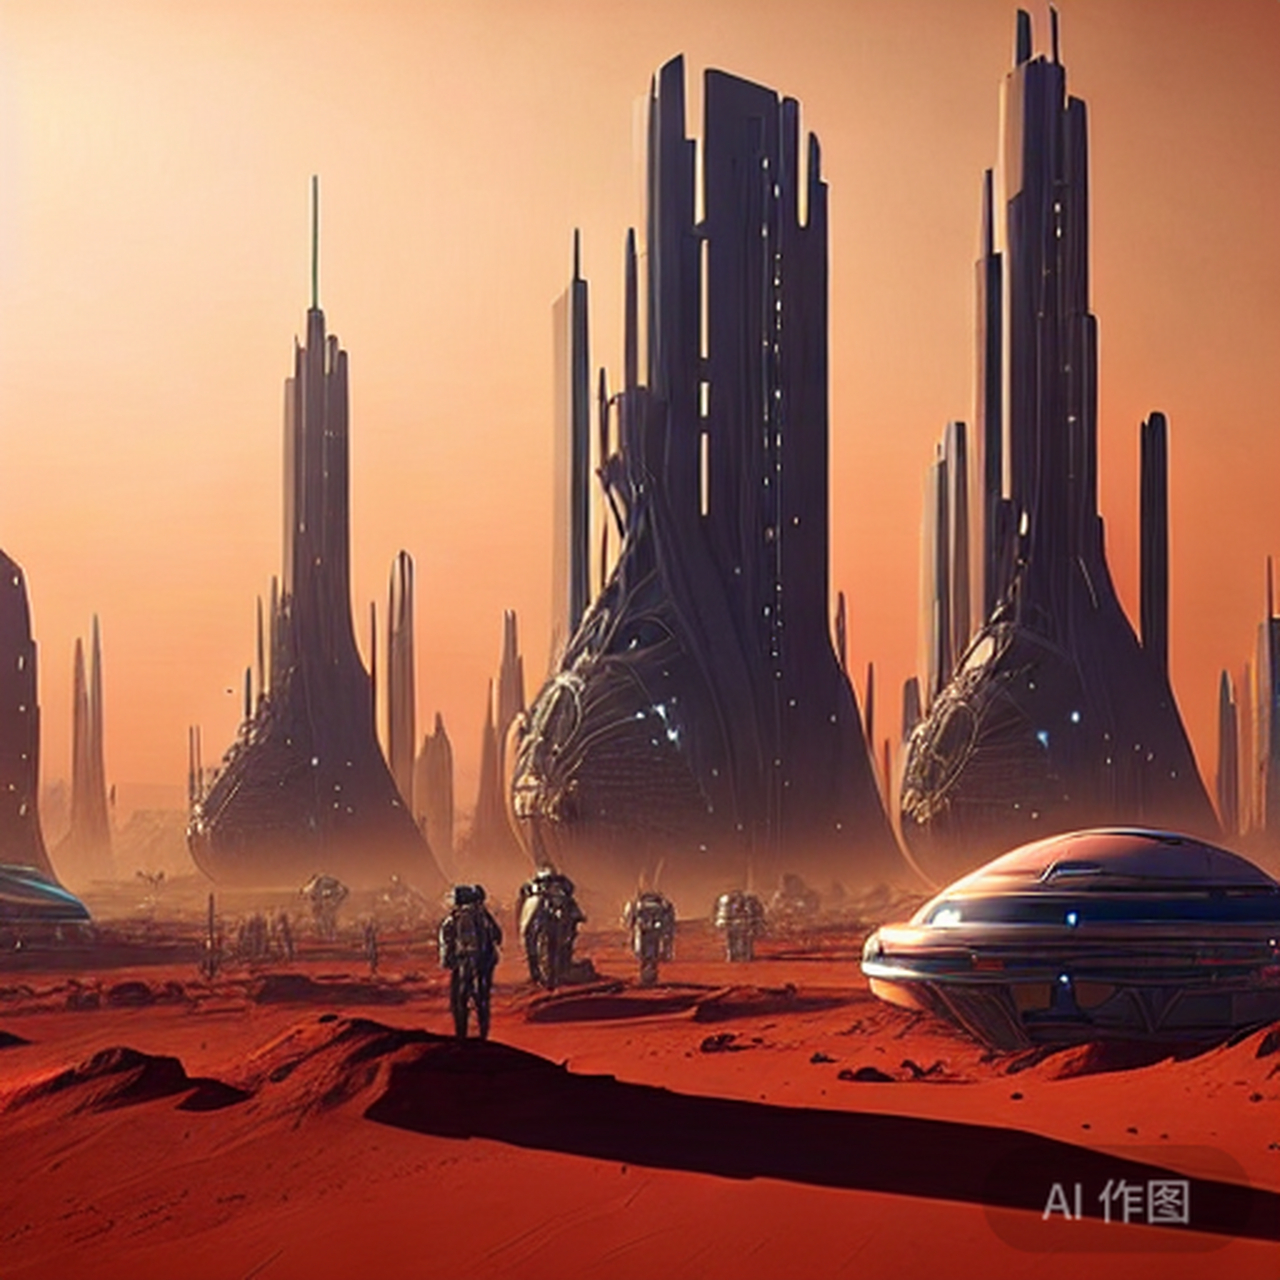 al幻想:未来人类火星殖民地的美丽城市!